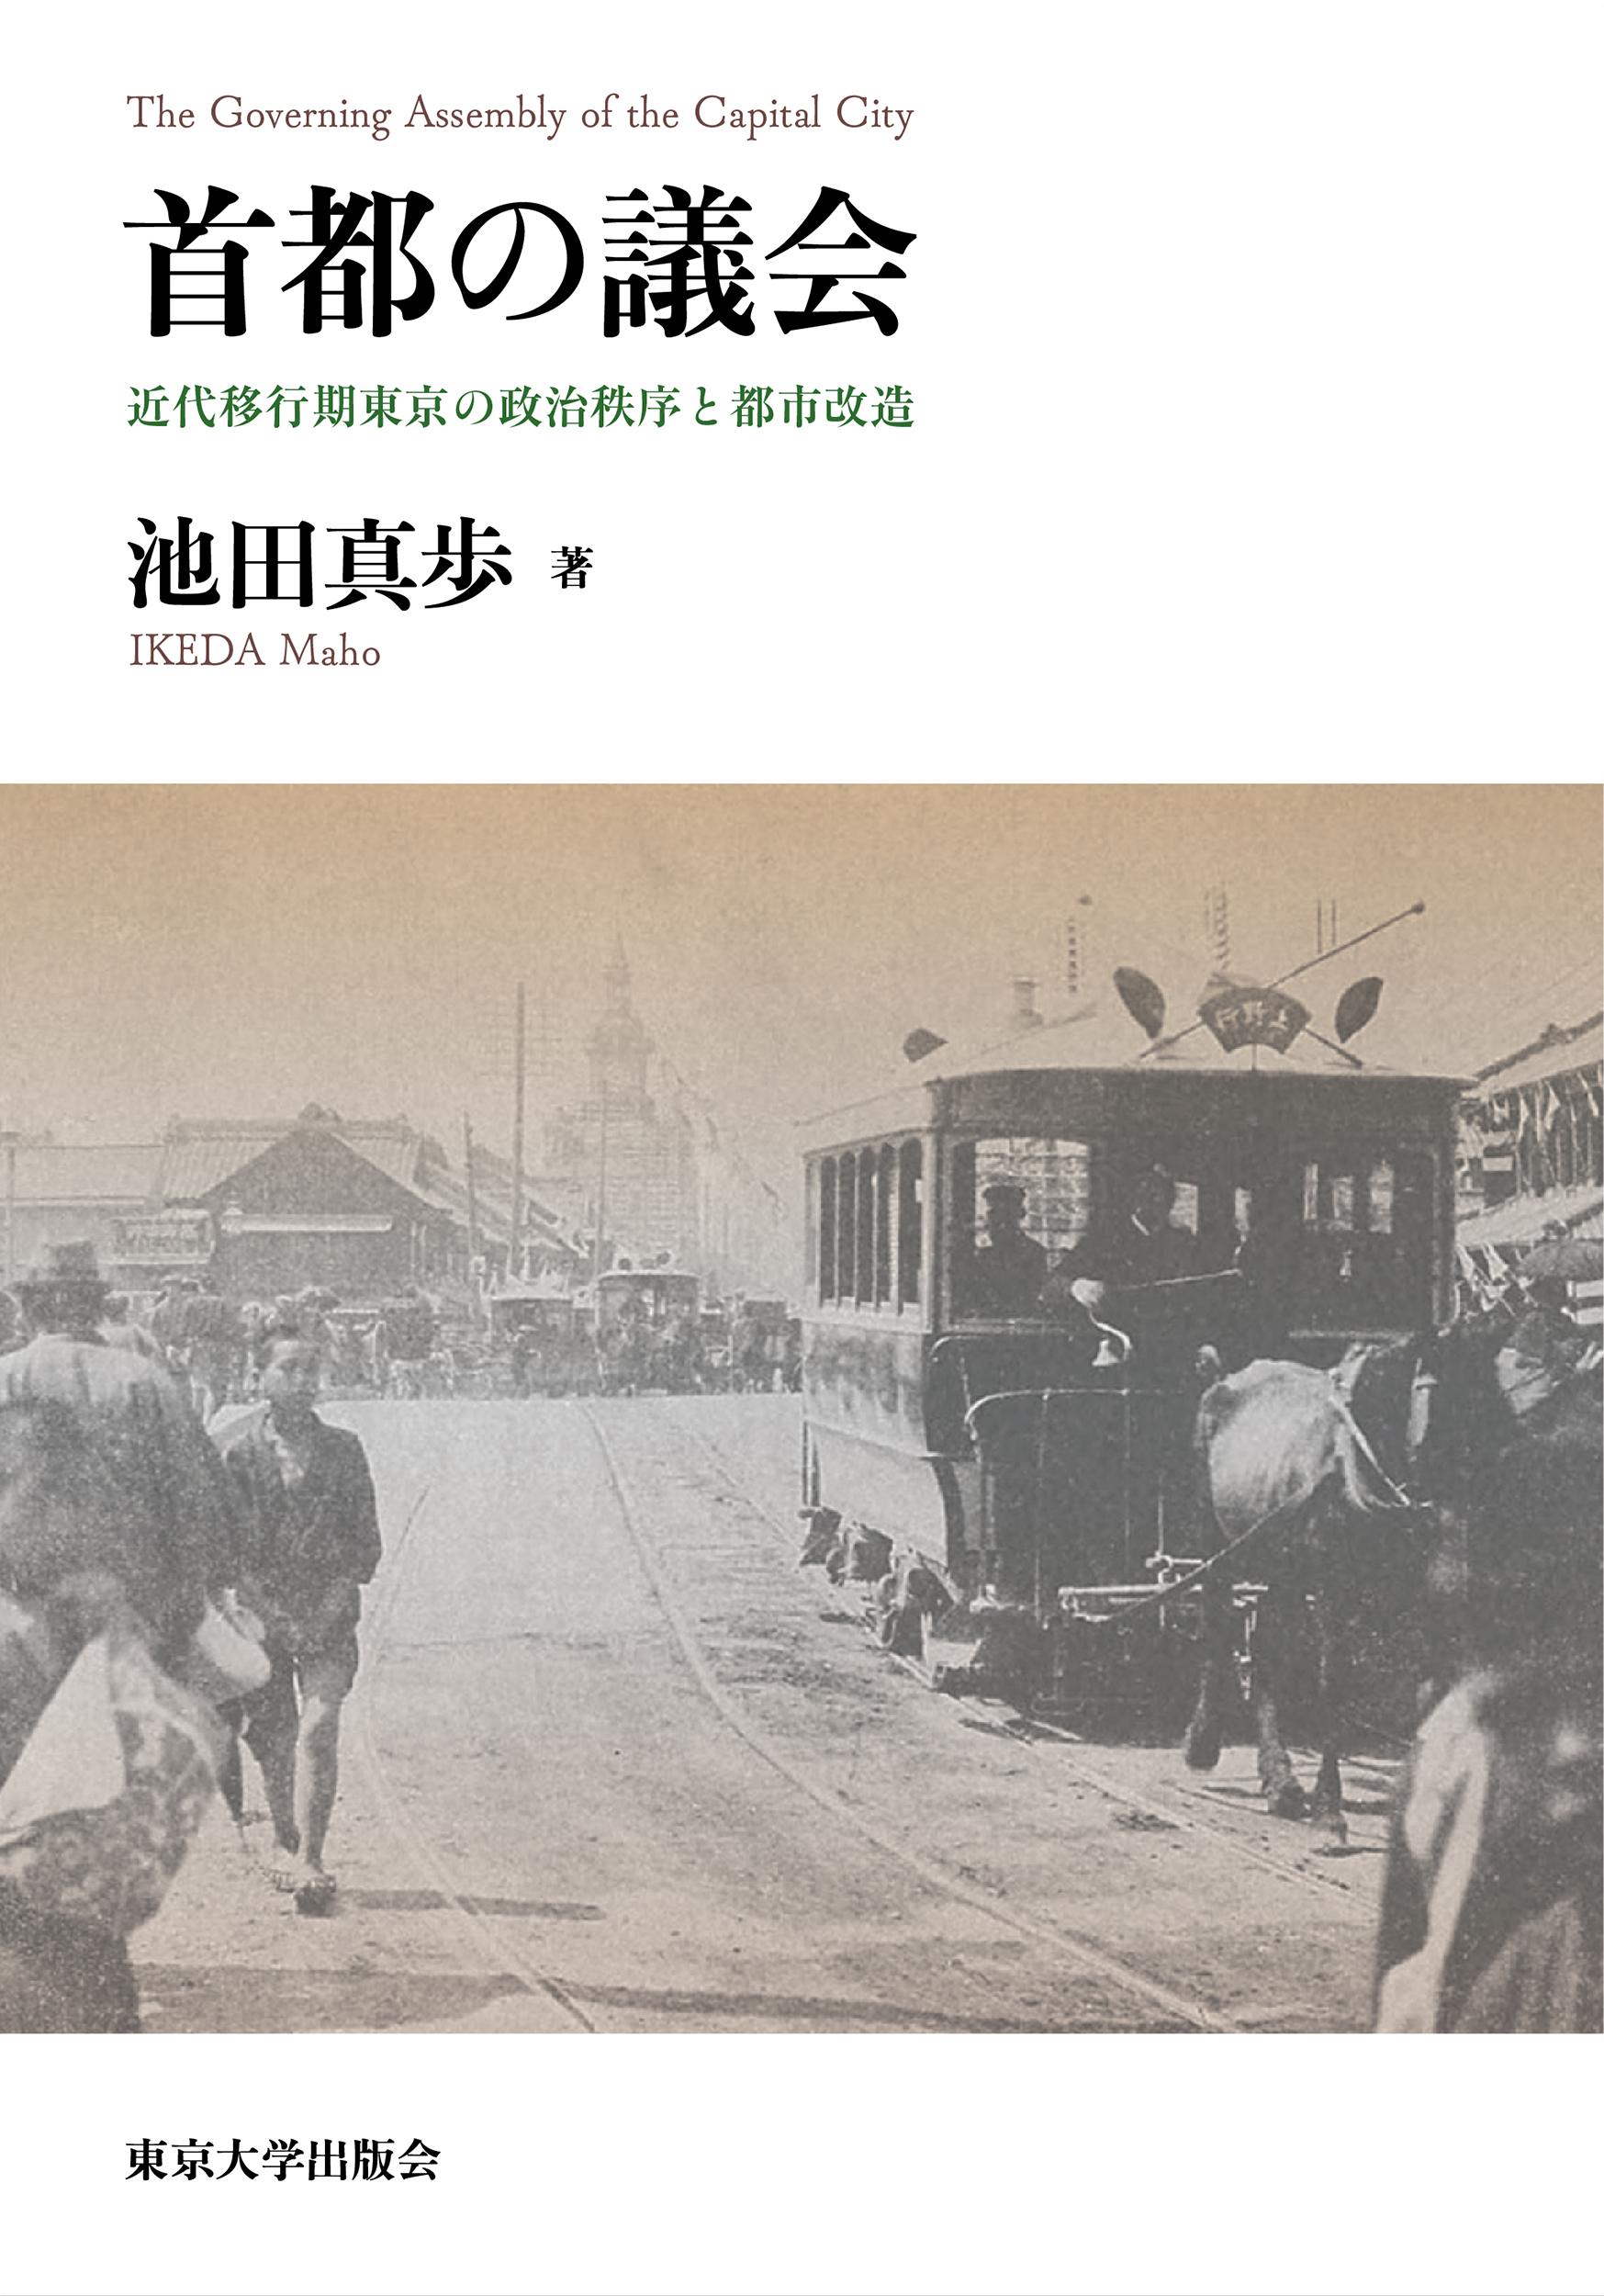 「明治33年日本橋をいく東京馬車鉄道上野行」の写真